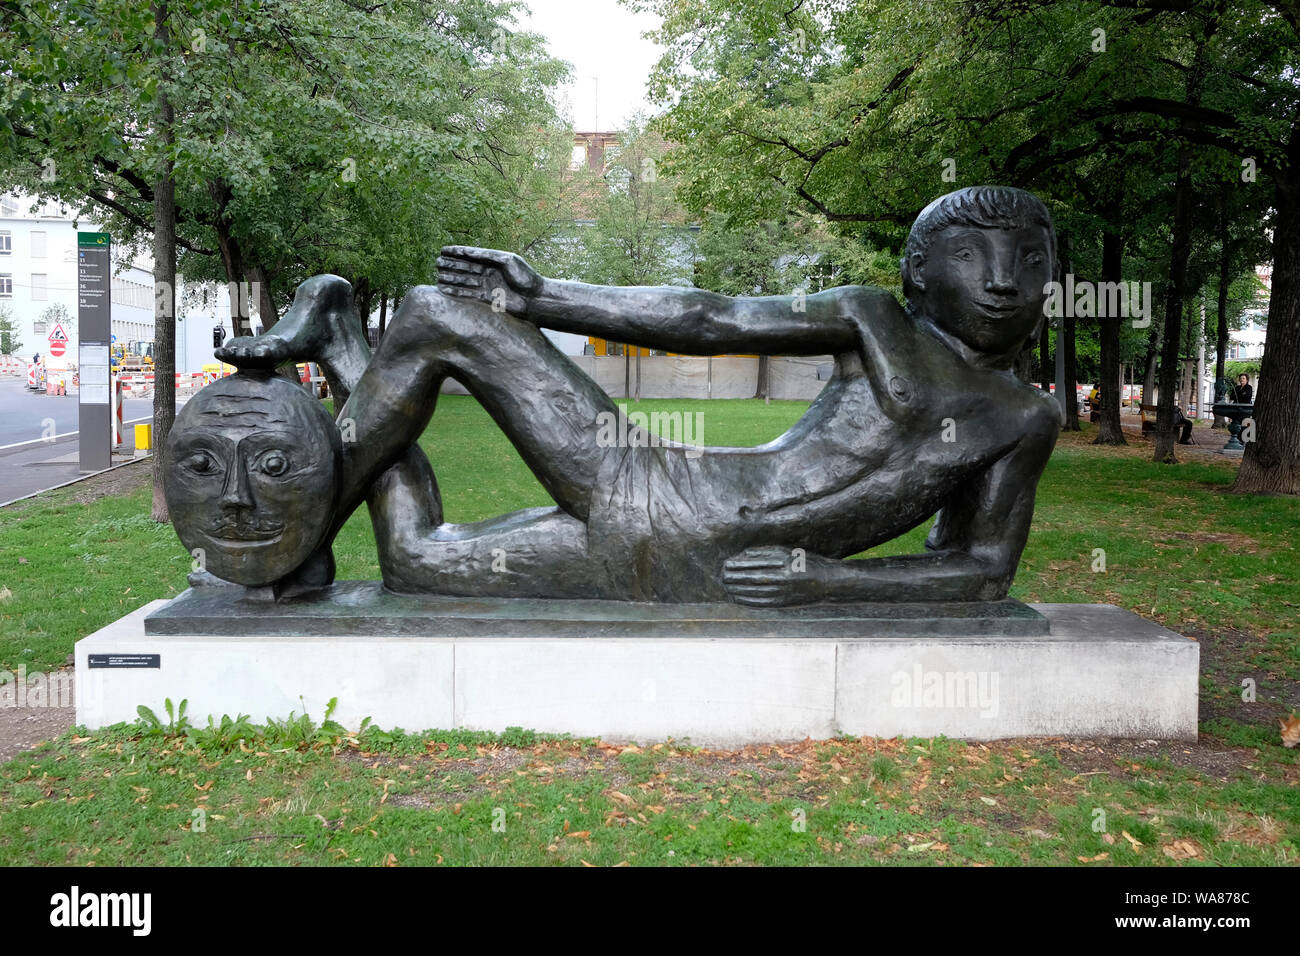 Une sculpture de l'artiste suisse Charles Otto Banninger, Bâle, Suisse Banque D'Images